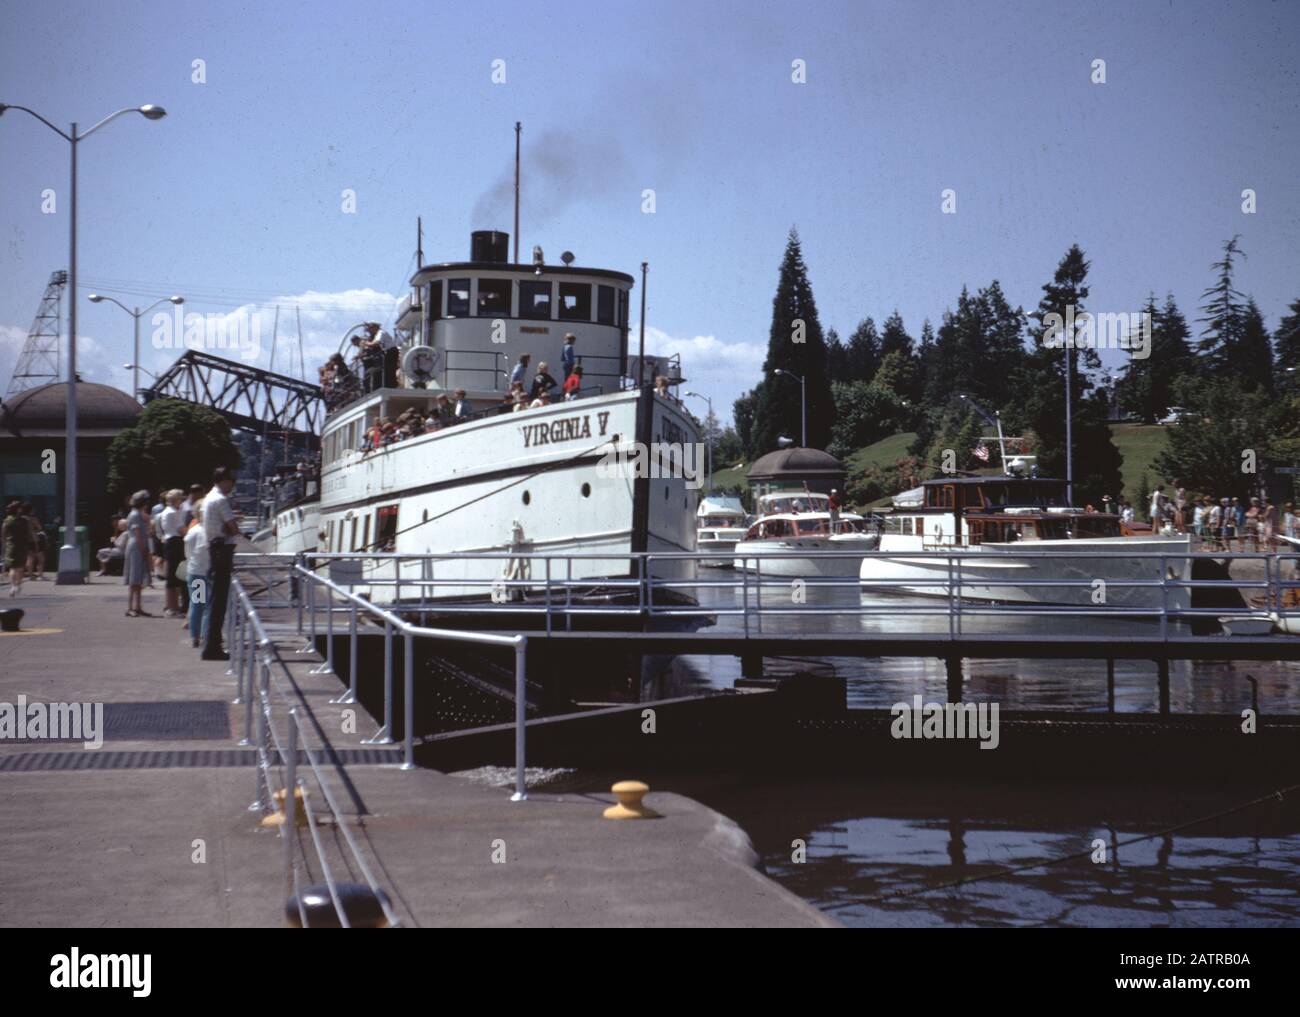 Les gens se rassemblent sur un quai et se préparent à monter à bord du Virginia V, un bateau à vapeur Puget Sound Mosquito Fleet, Seattle, Washington, 1965. () Banque D'Images